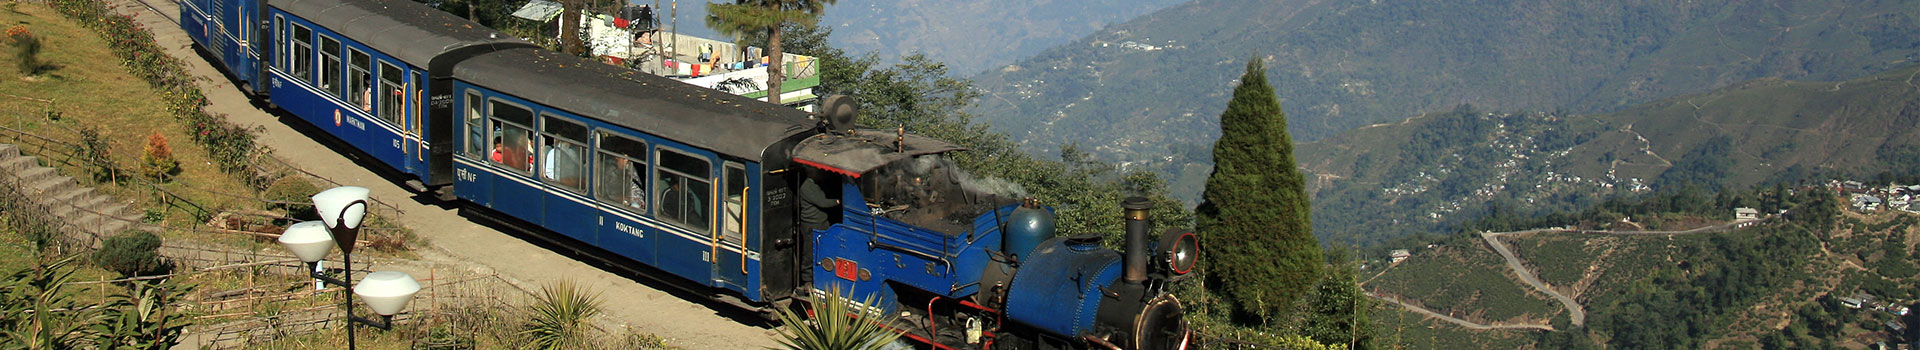 Delightful Darjeeling